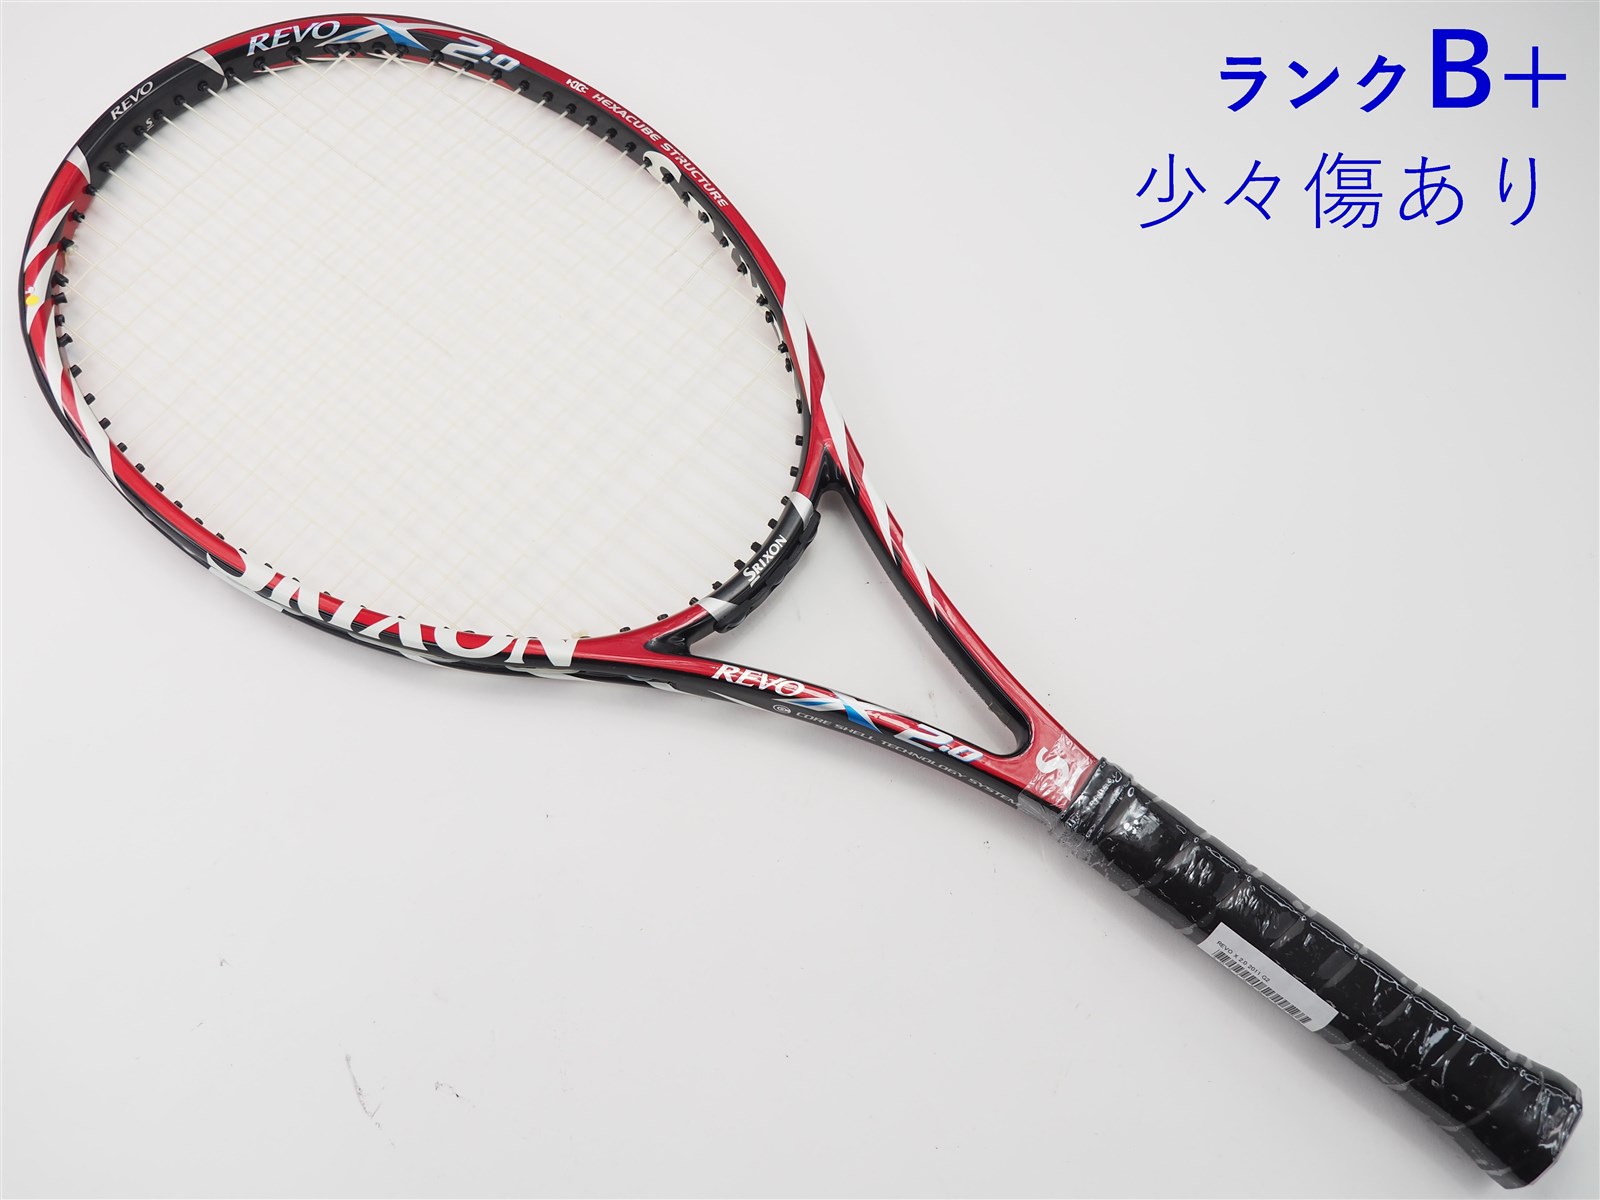 テニスラケット スリクソン Revo cz 100s - ラケット(硬式用)